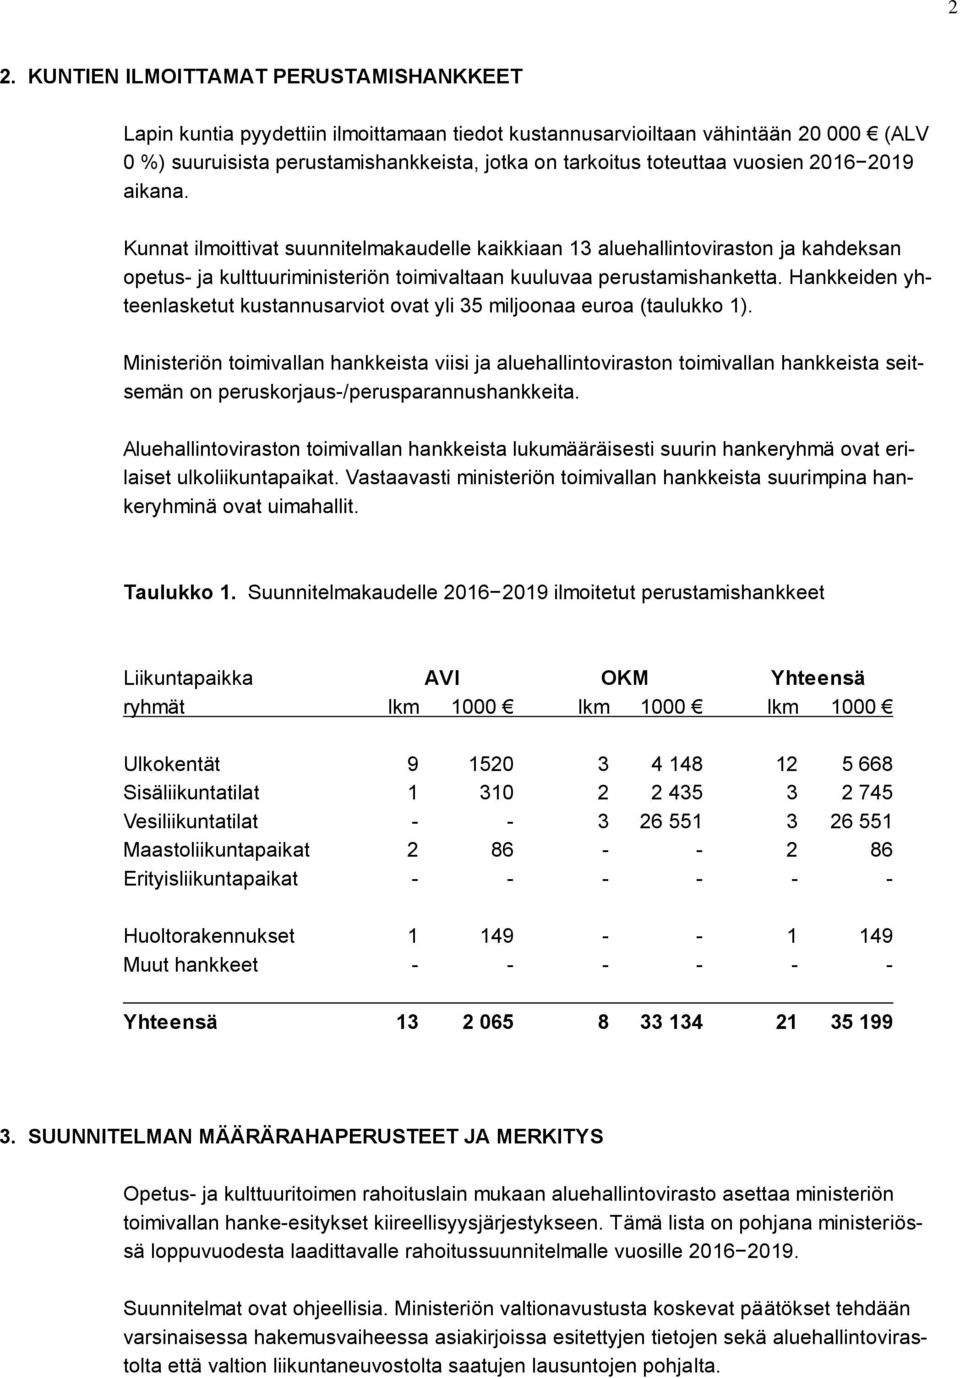 Hankkeiden yhteenlasketut kustannusarviot ovat yli 35 miljoonaa euroa (taulukko 1).